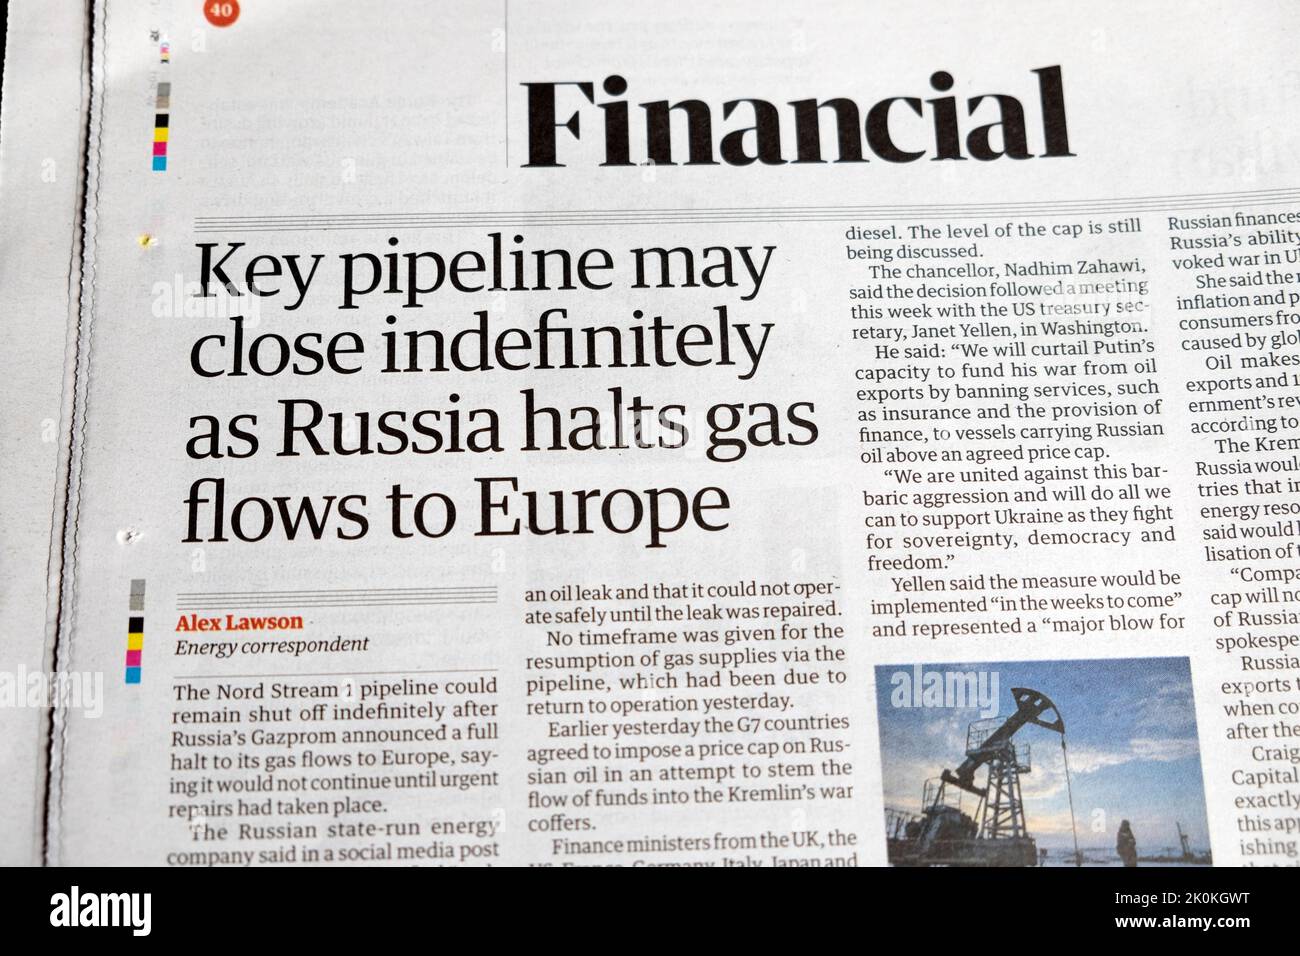 ''El oleoducto clave puede cerrar indefinidamente cuando Rusia detenga los flujos de gas hacia Europa' El periódico Guardian, artículo sobre crisis energética 3 de septiembre de 2022 Reino Unido Foto de stock